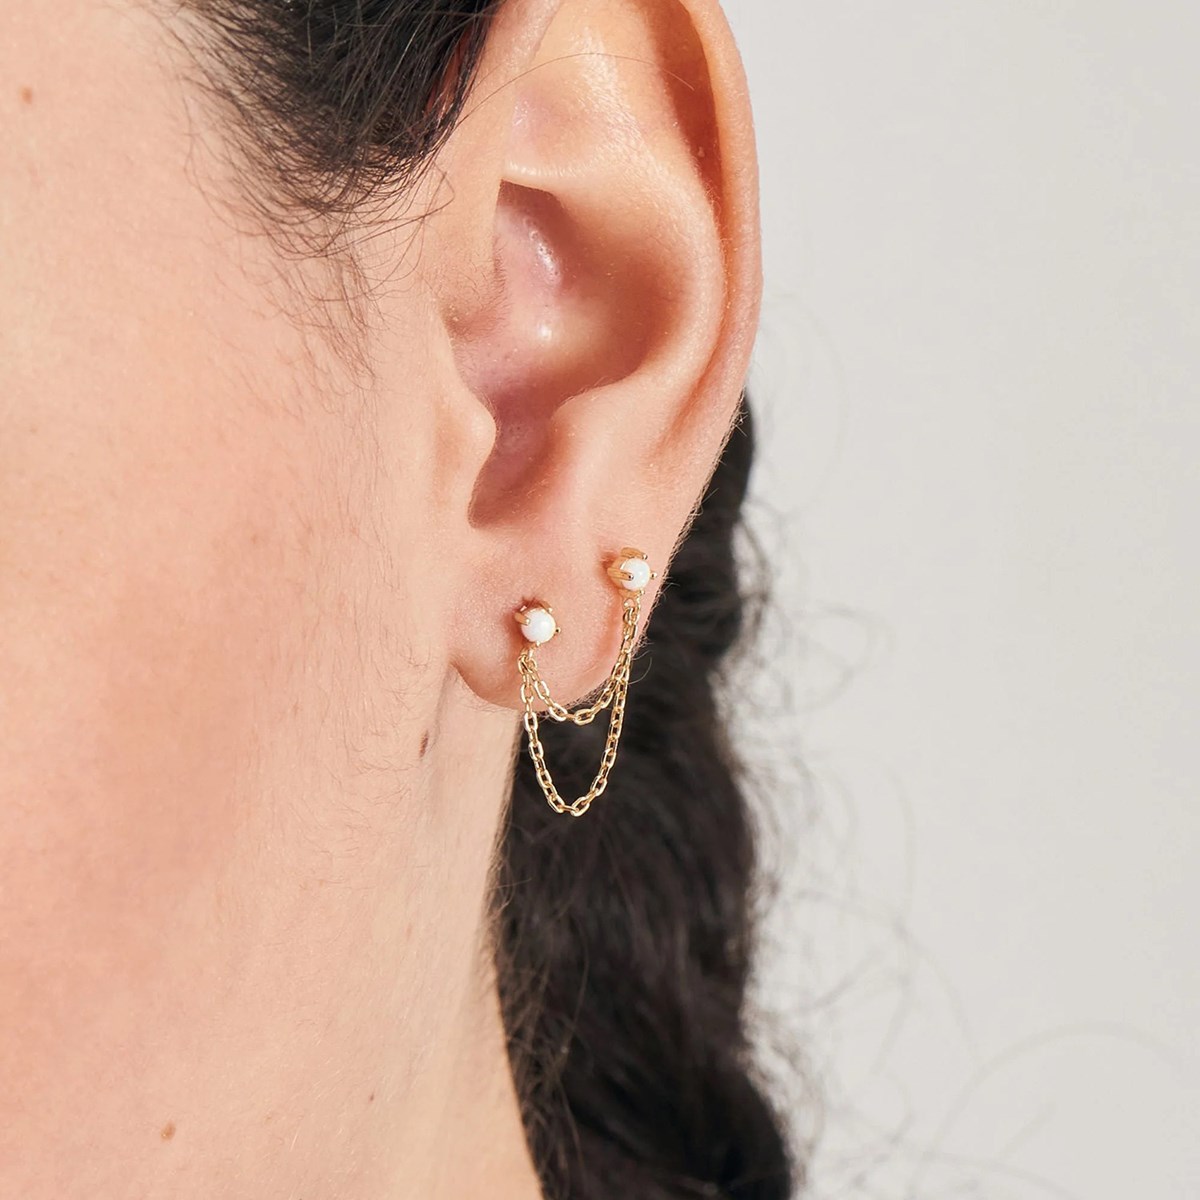 Boucle d'oreille individuelle Ania Haie Kyoto Opal
Drop Chain dorée - vue 2